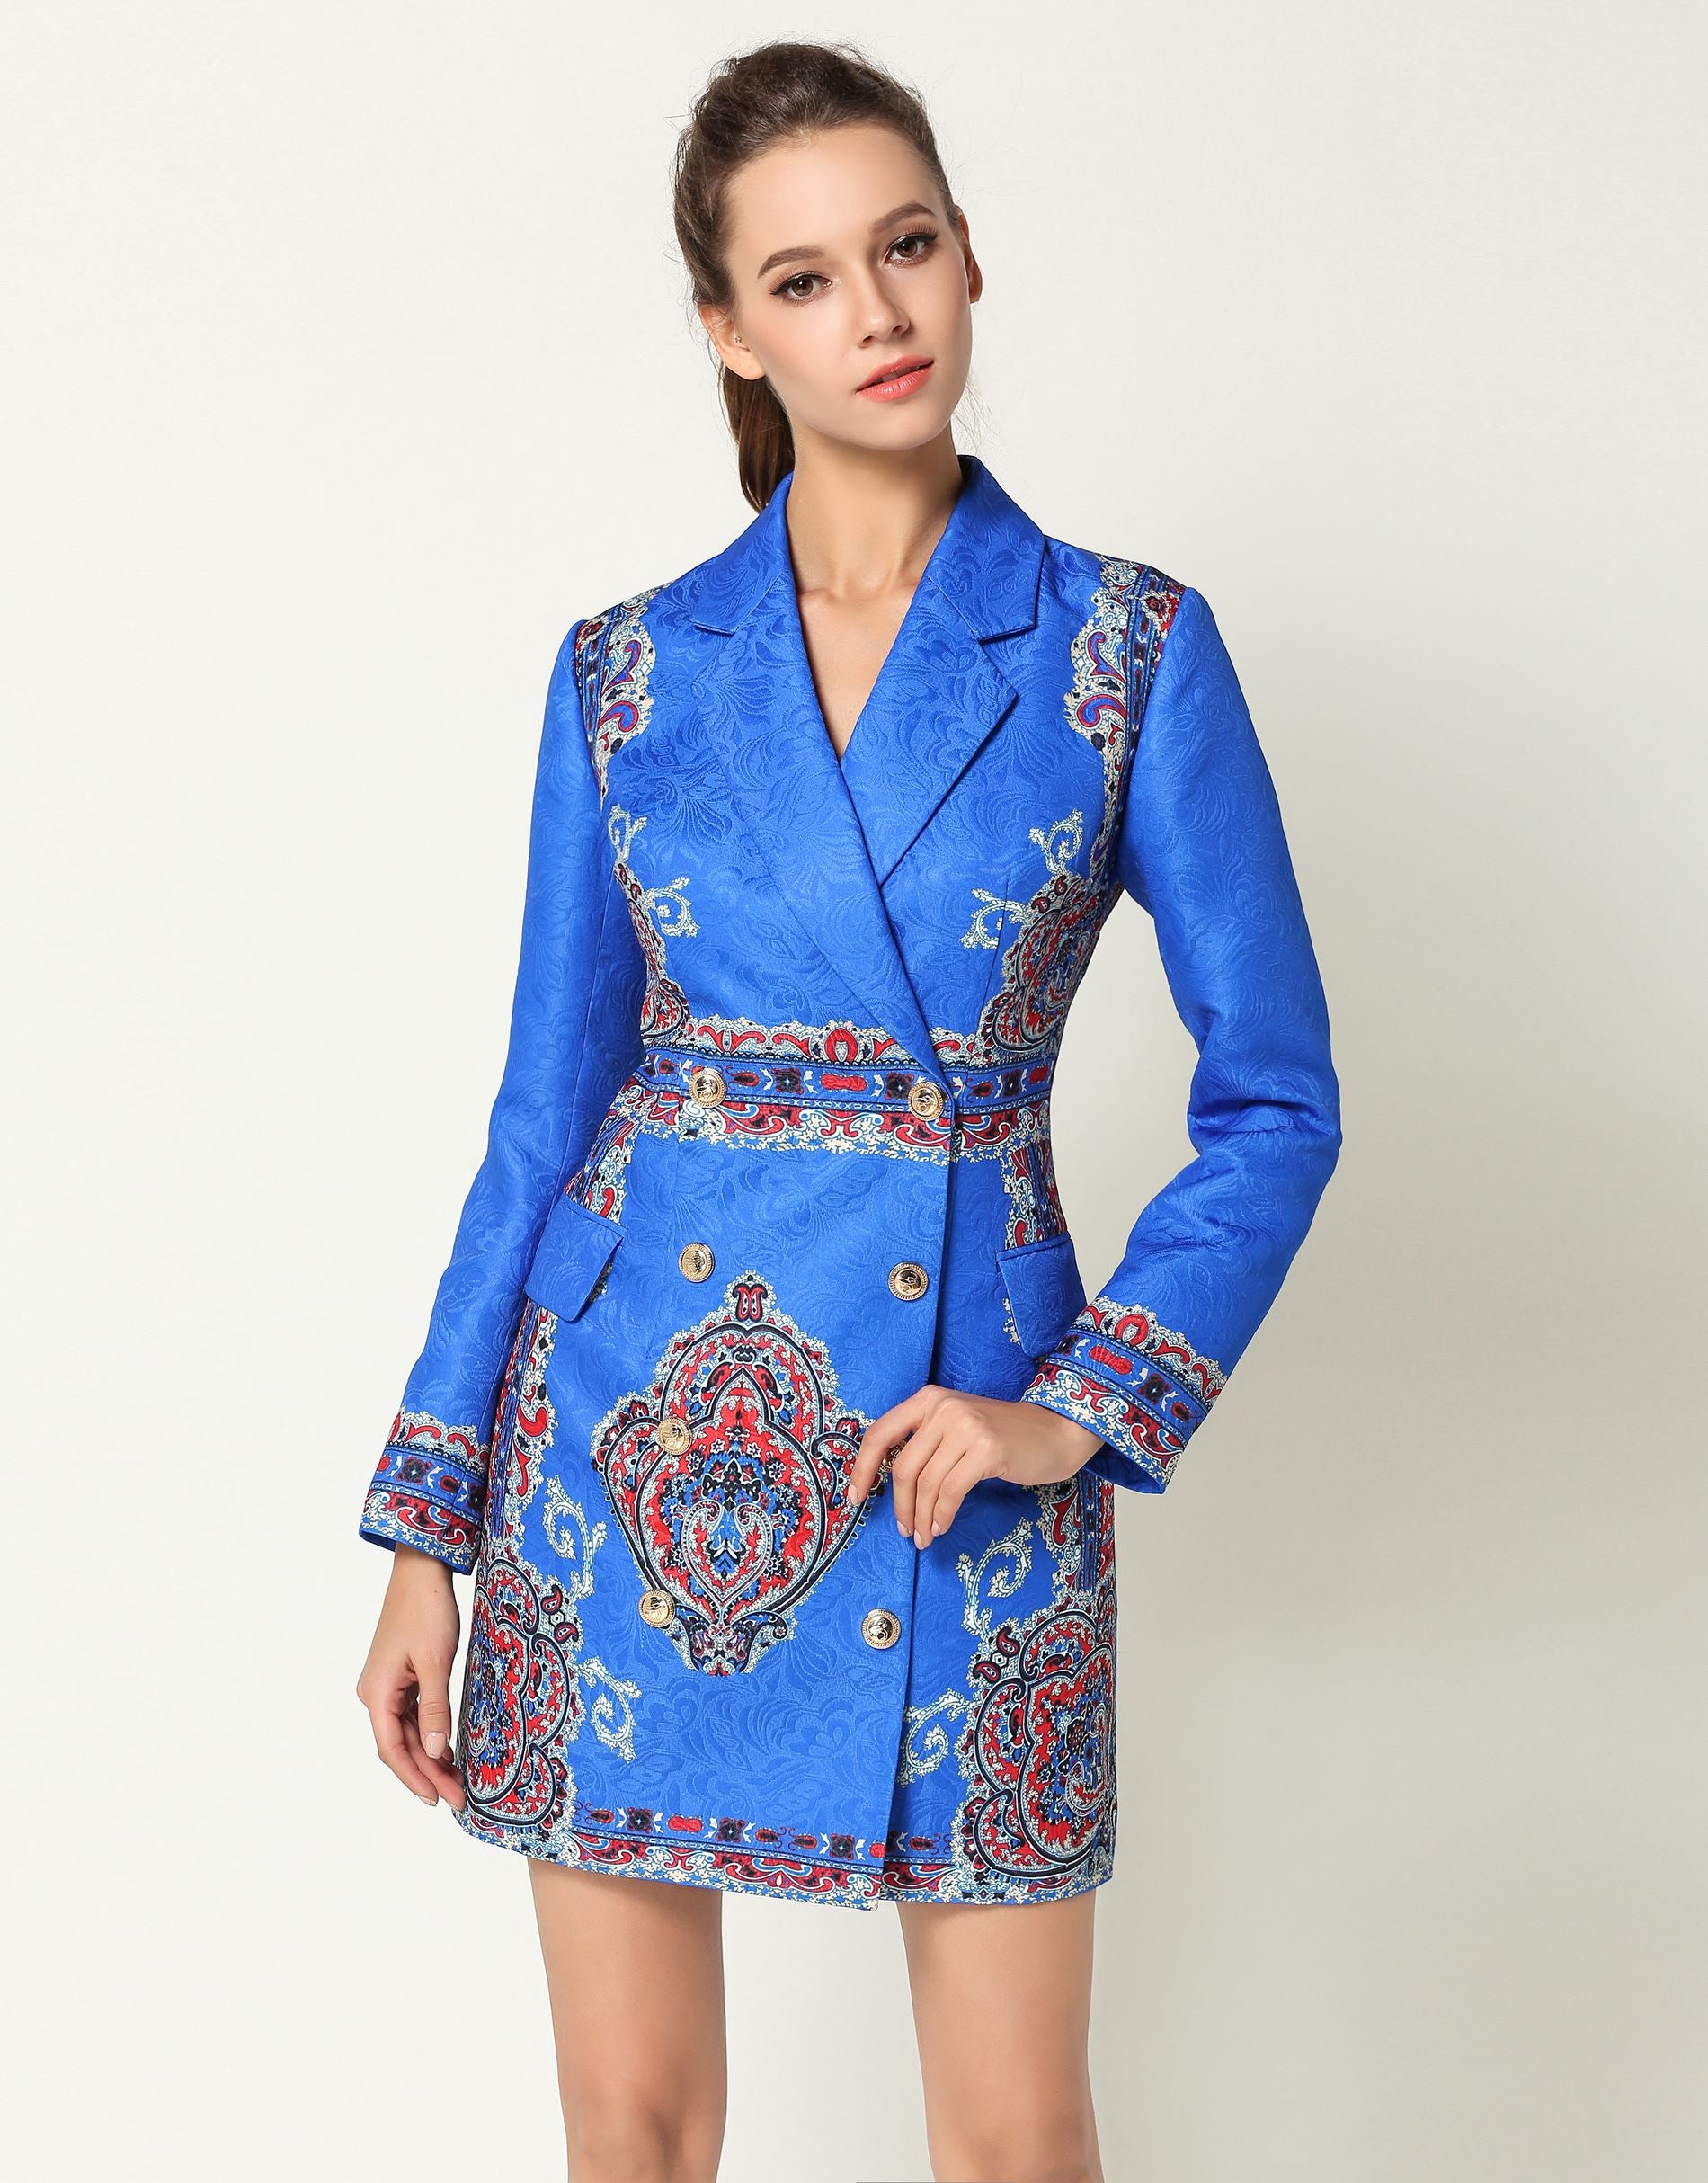 comino couture blue blazer dress